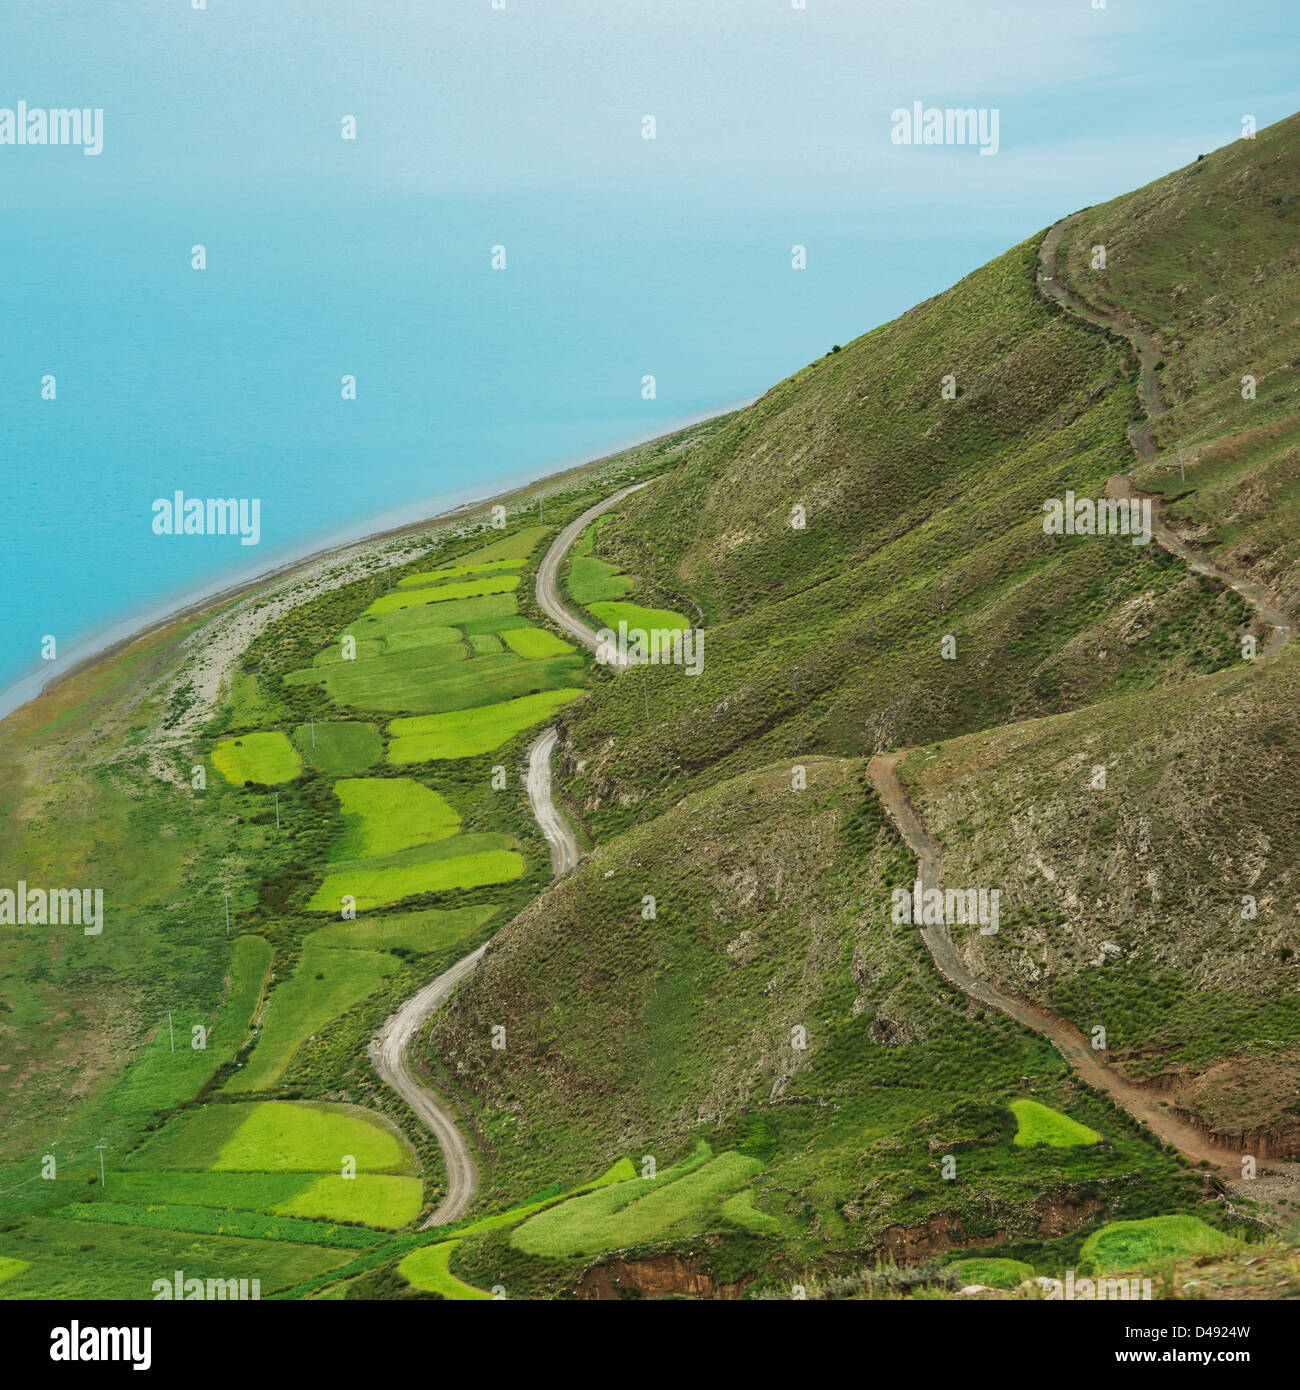 Vue aérienne du paysage de champs et d'une route à travers les collines;Shannan xizang china Banque D'Images